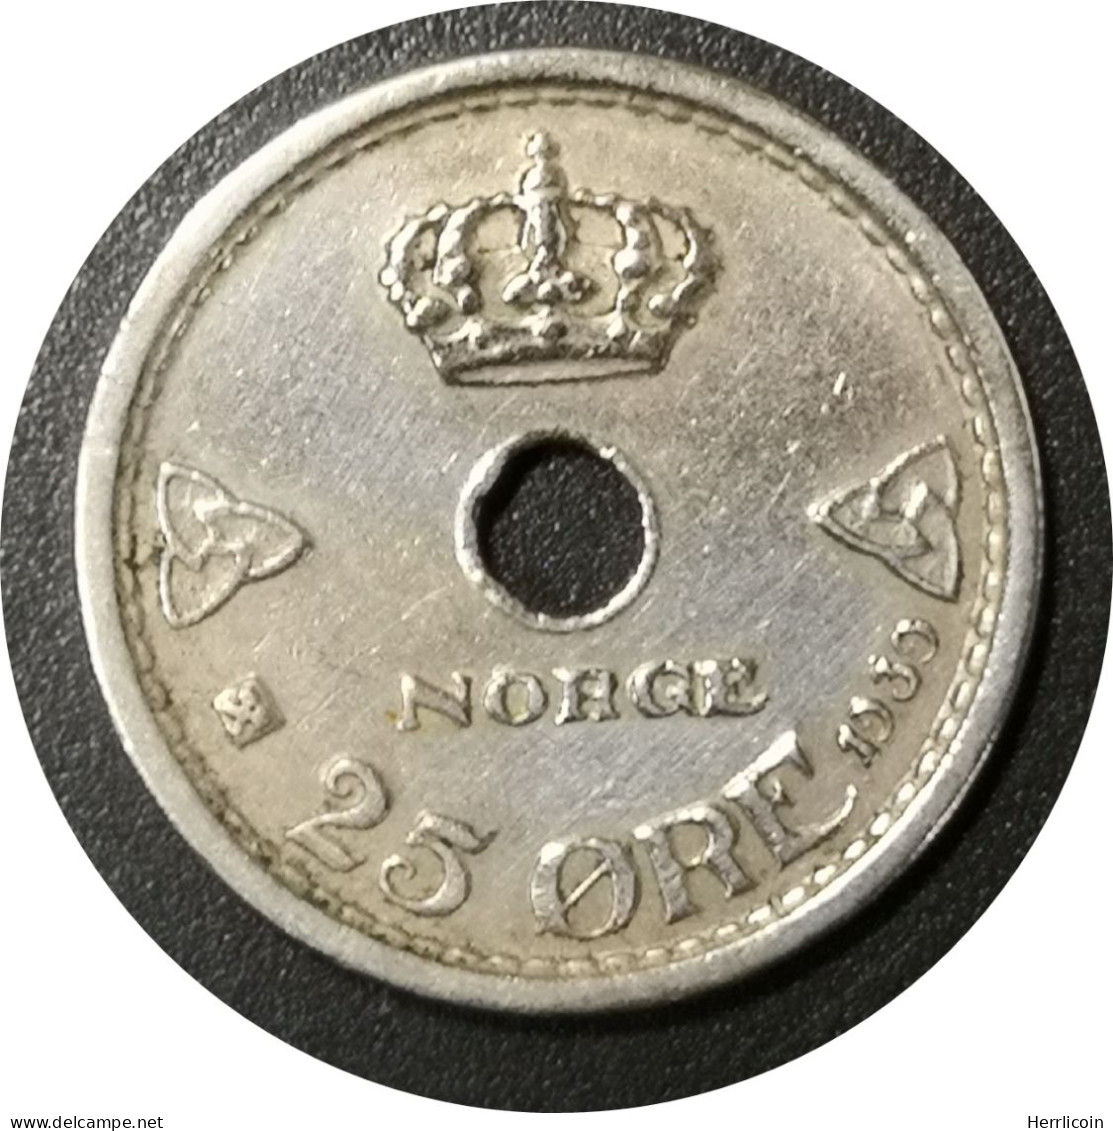 Monnaie Norvège - 1939 - 25 øre - Haakon VII - Norvège